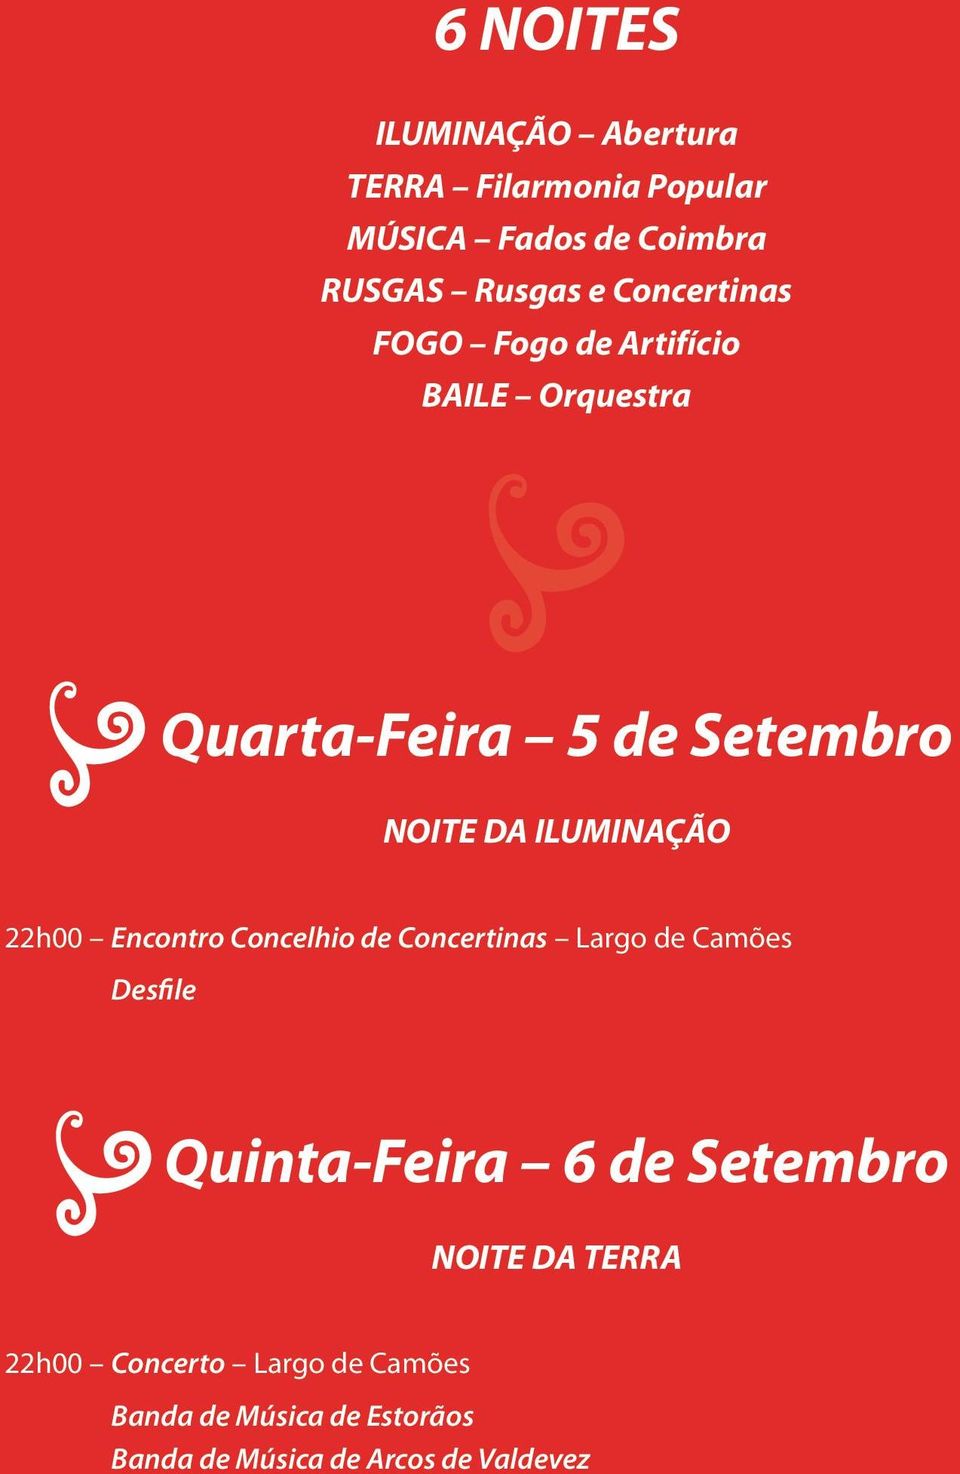 22h00 Encontro Concelhio de Concertinas Largo de Camões Desfile Quinta-Feira 6 de Setembro NOITE